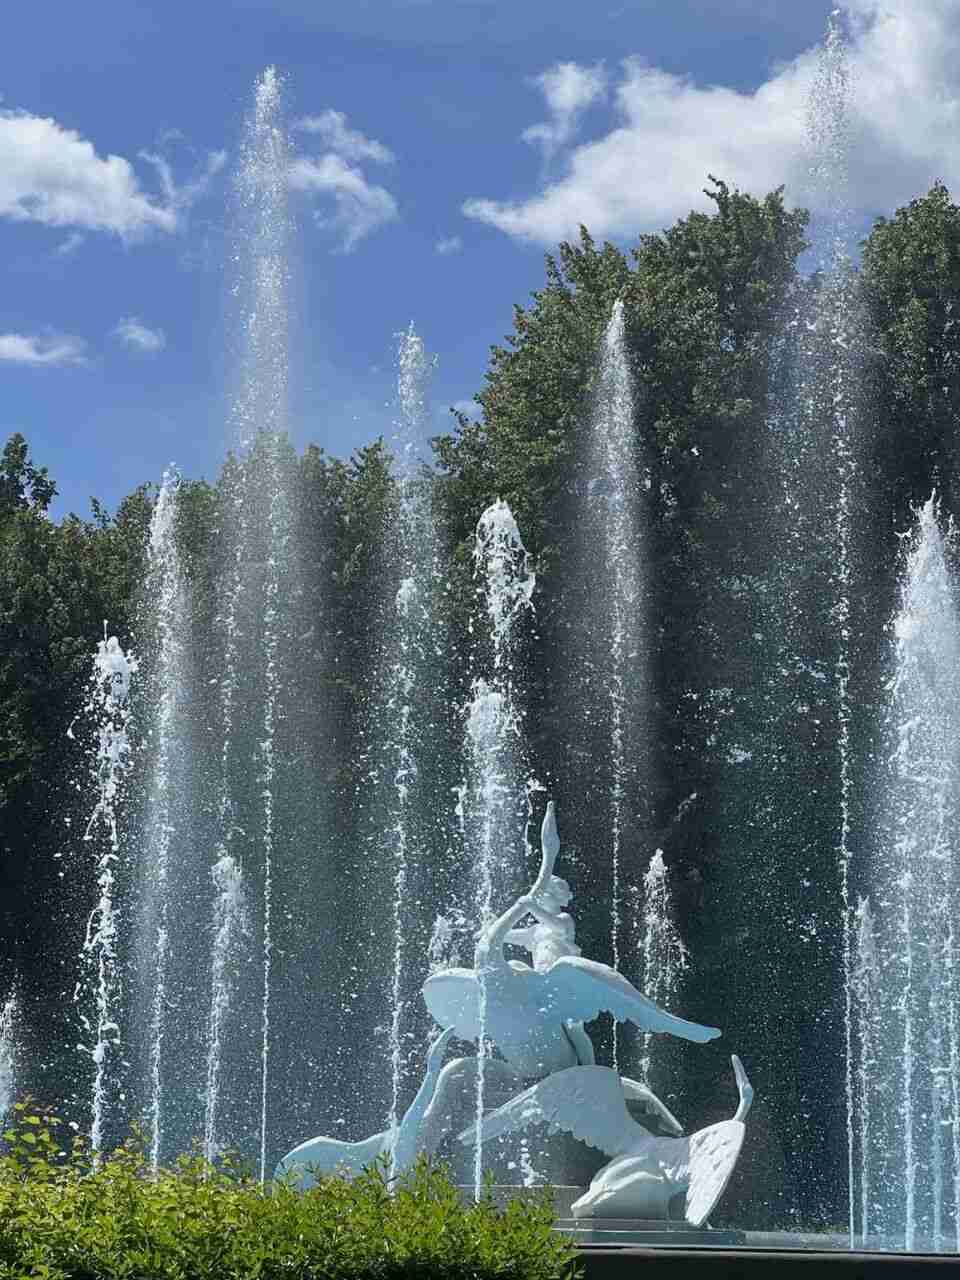 У Львові відновив роботу фонтан, який пошкодили відпочивальники намагаючись вилізти на скульптури лебедів (ФОТО)